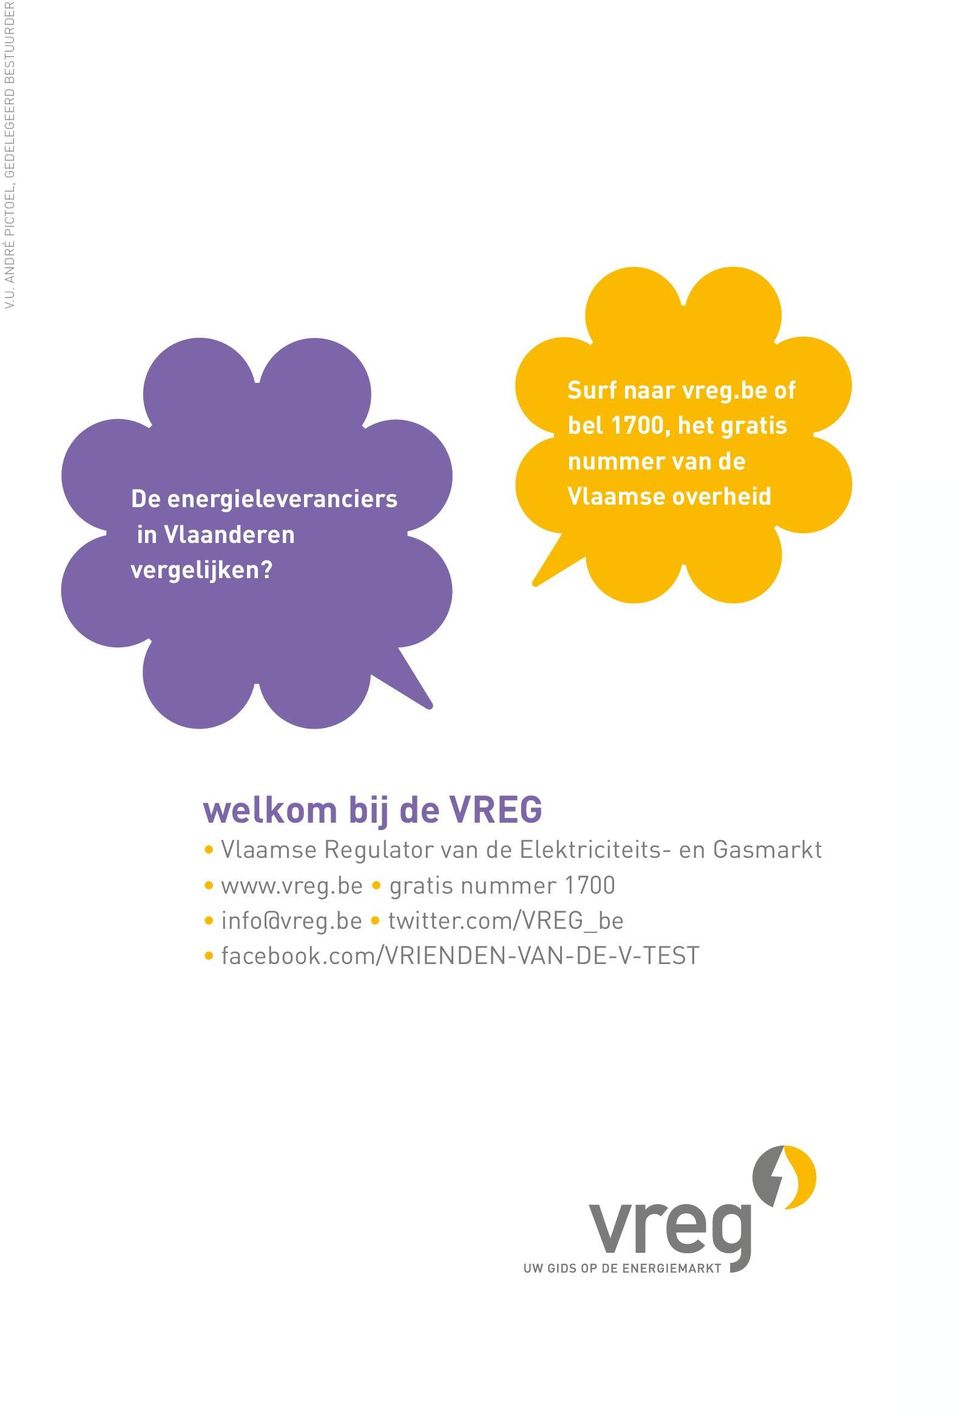 be of bel 1700, het gratis nummer van de De Vlaamse energieleveranciers overheid in Vlaanderen